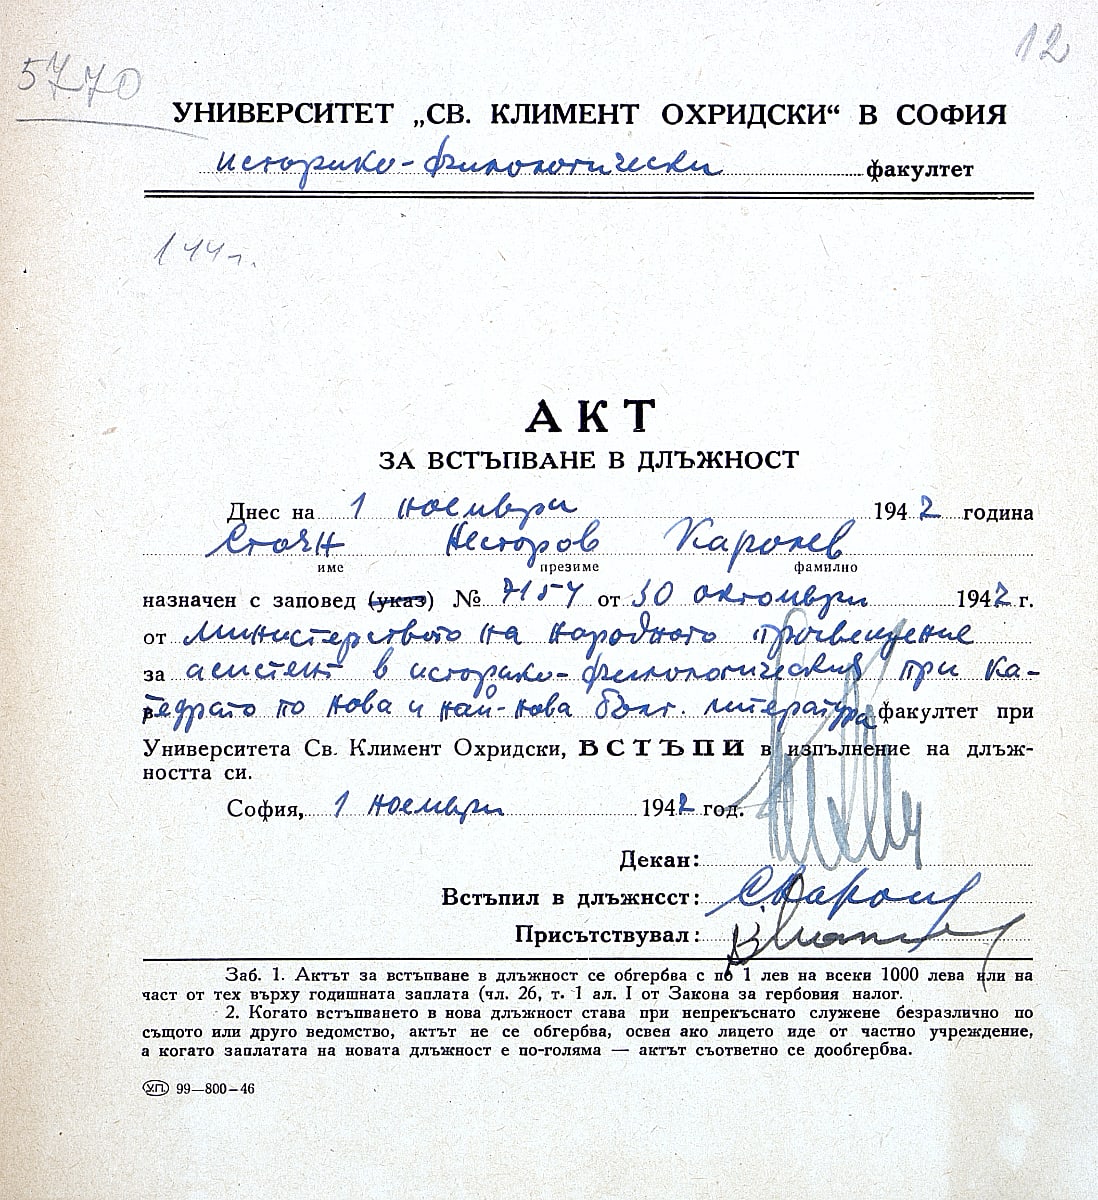 Акт за встъпване в длъжност на Стоян Каролев – 1.11.1947 г.